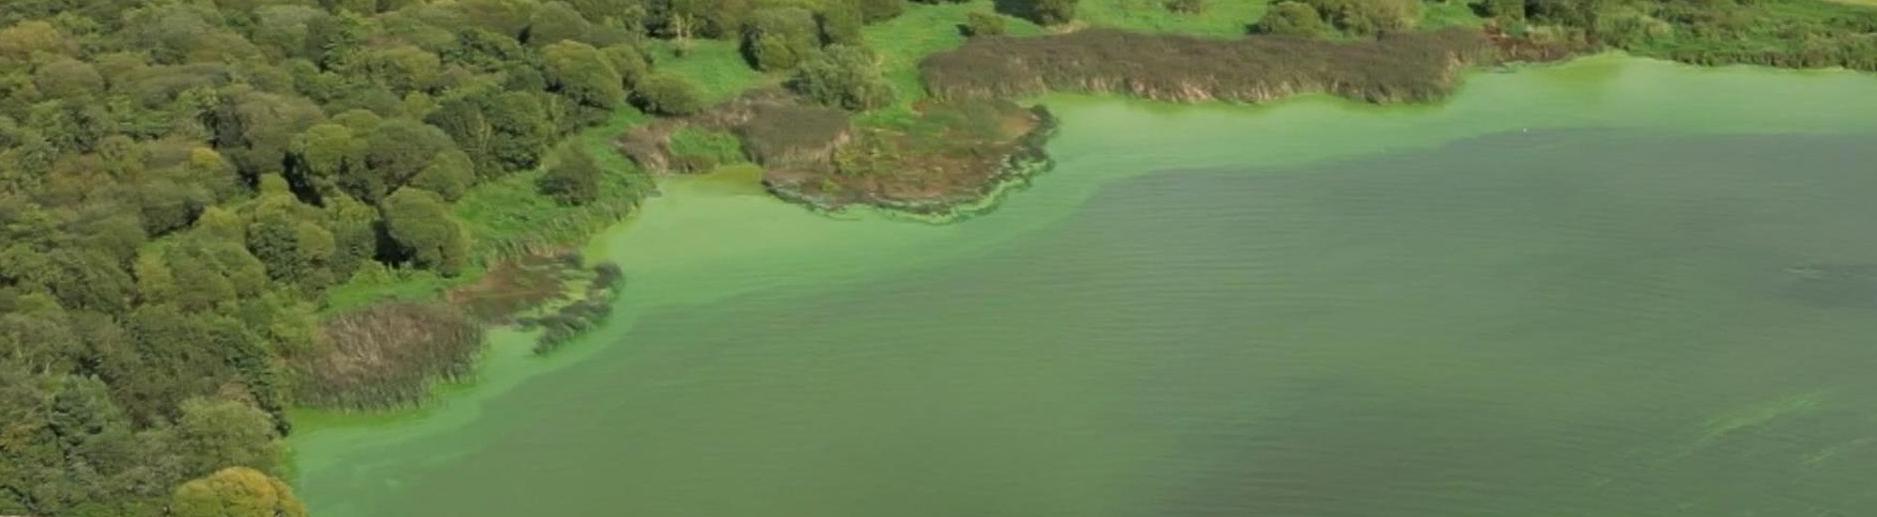 В Британии погибает крупнейшее пресноводное озеро Лох-Ней 